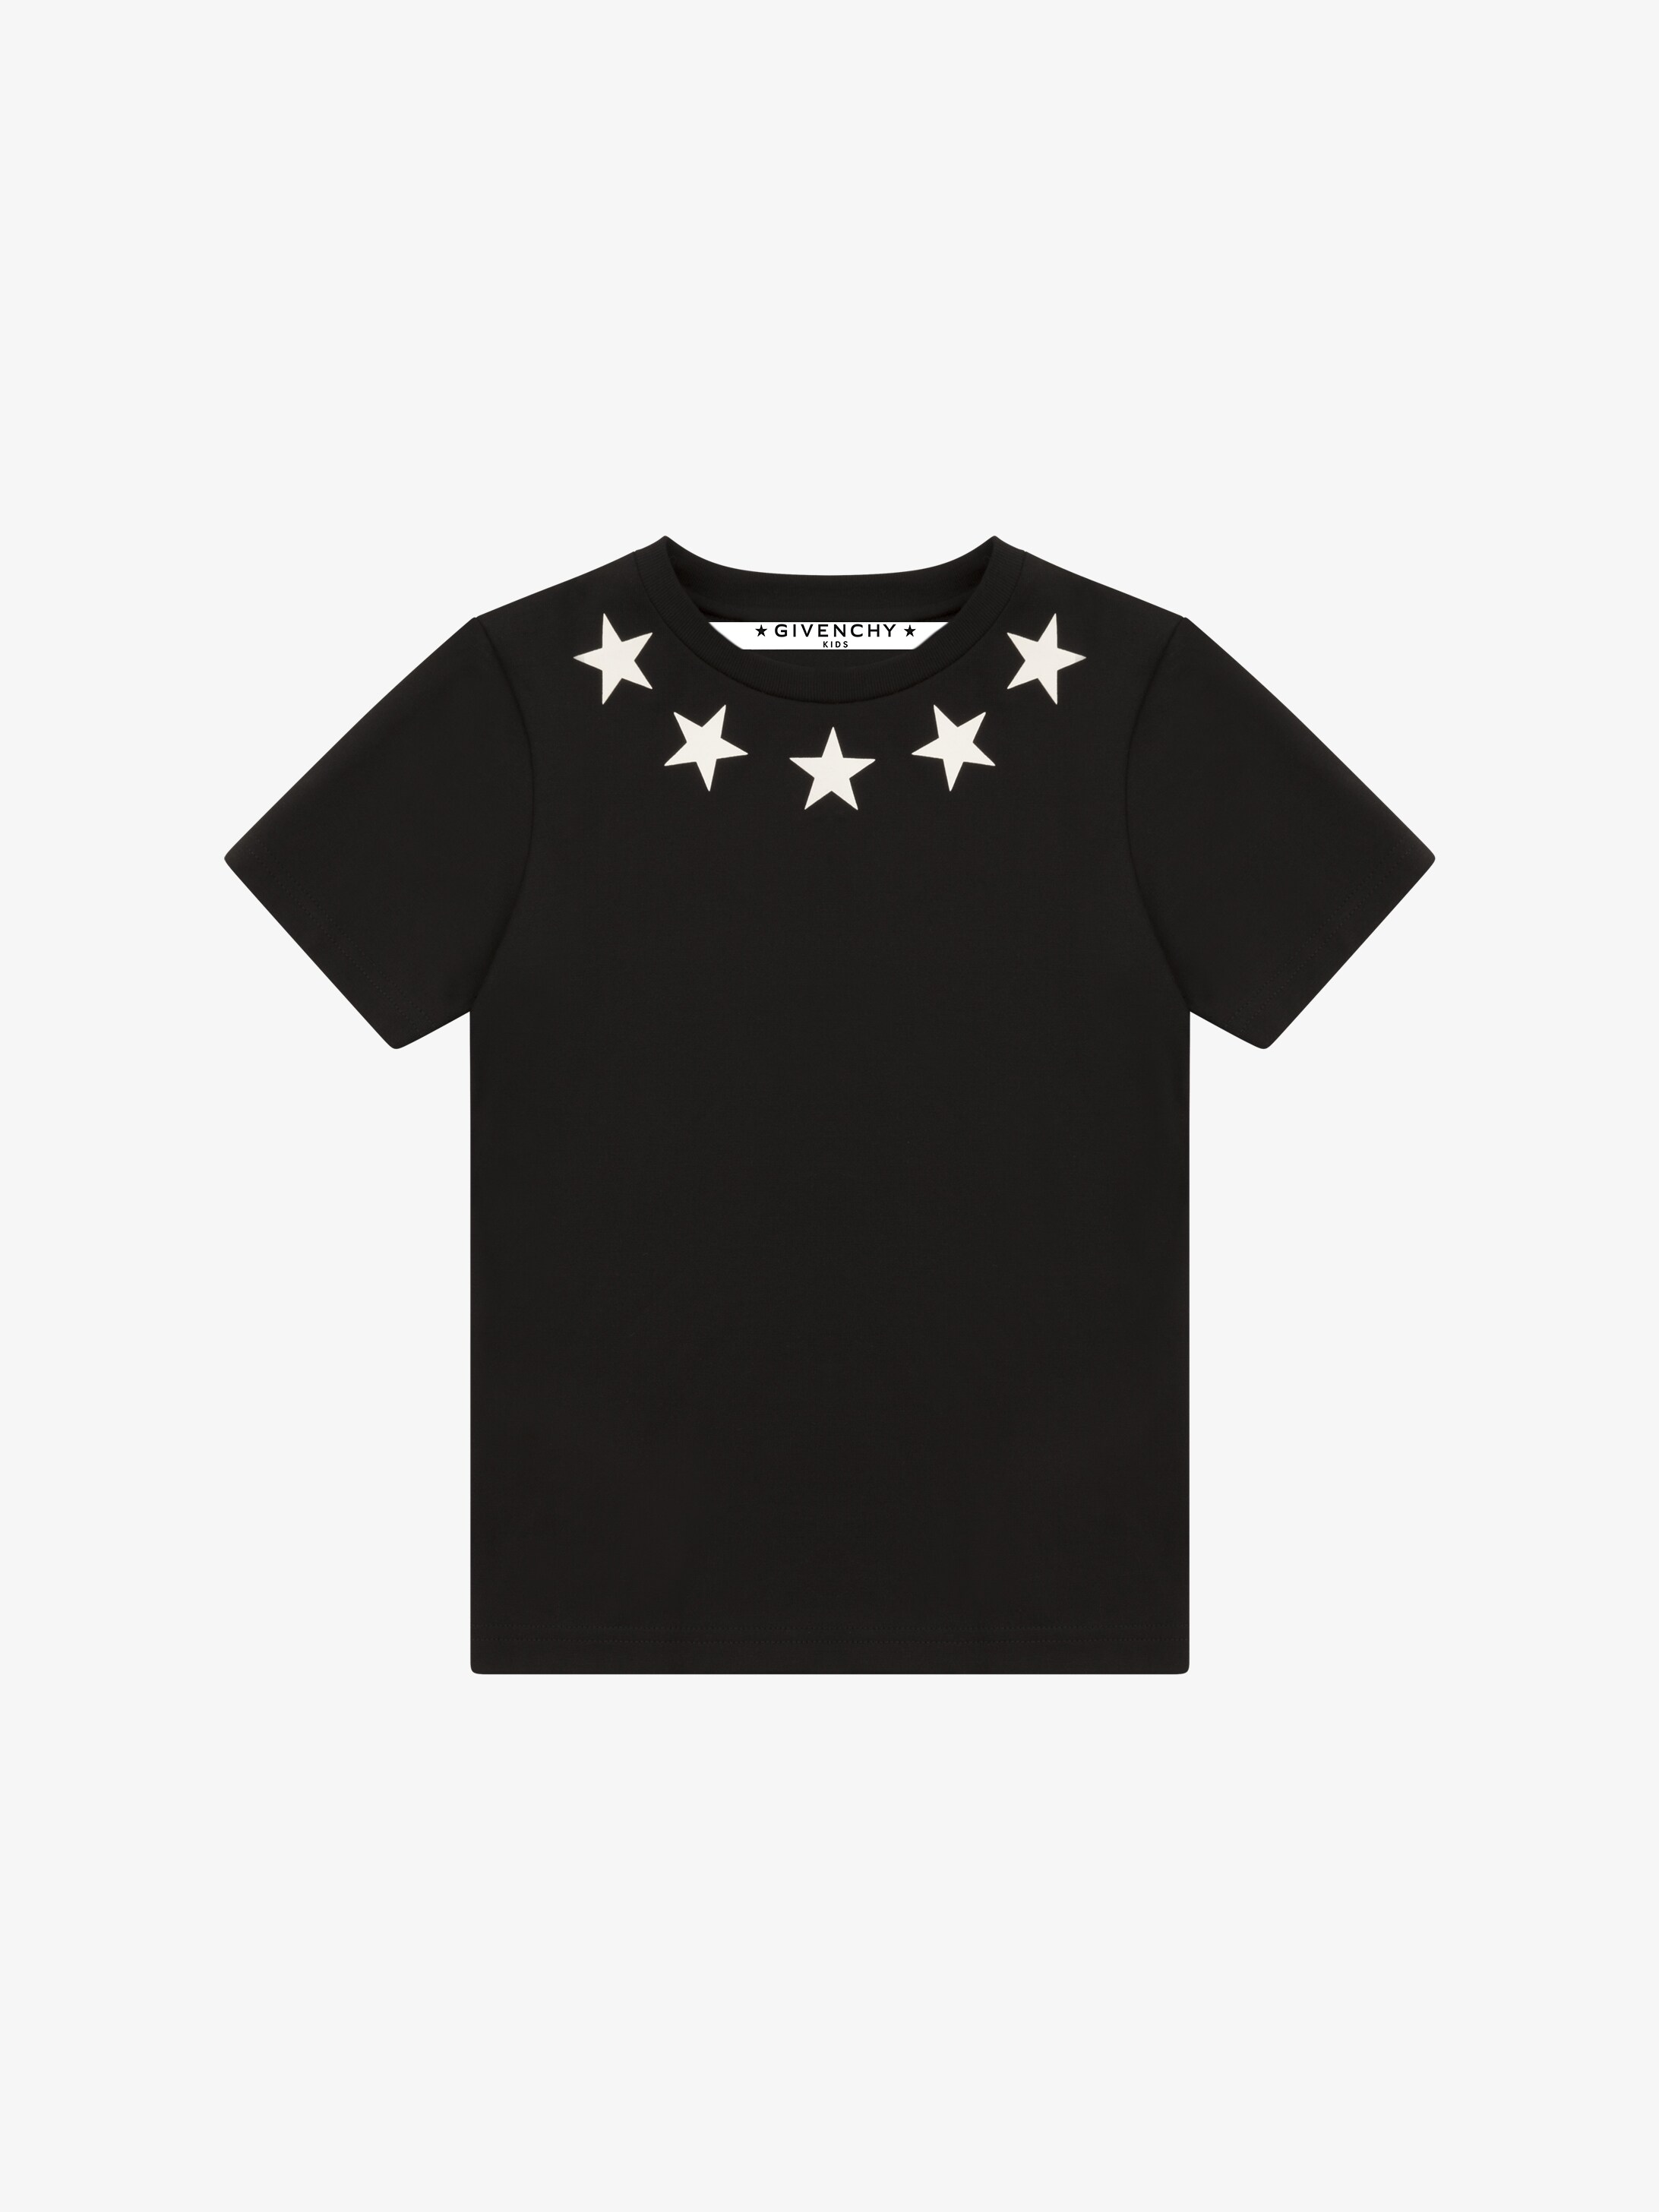 Stars printed t-shirt | GIVENCHY Paris